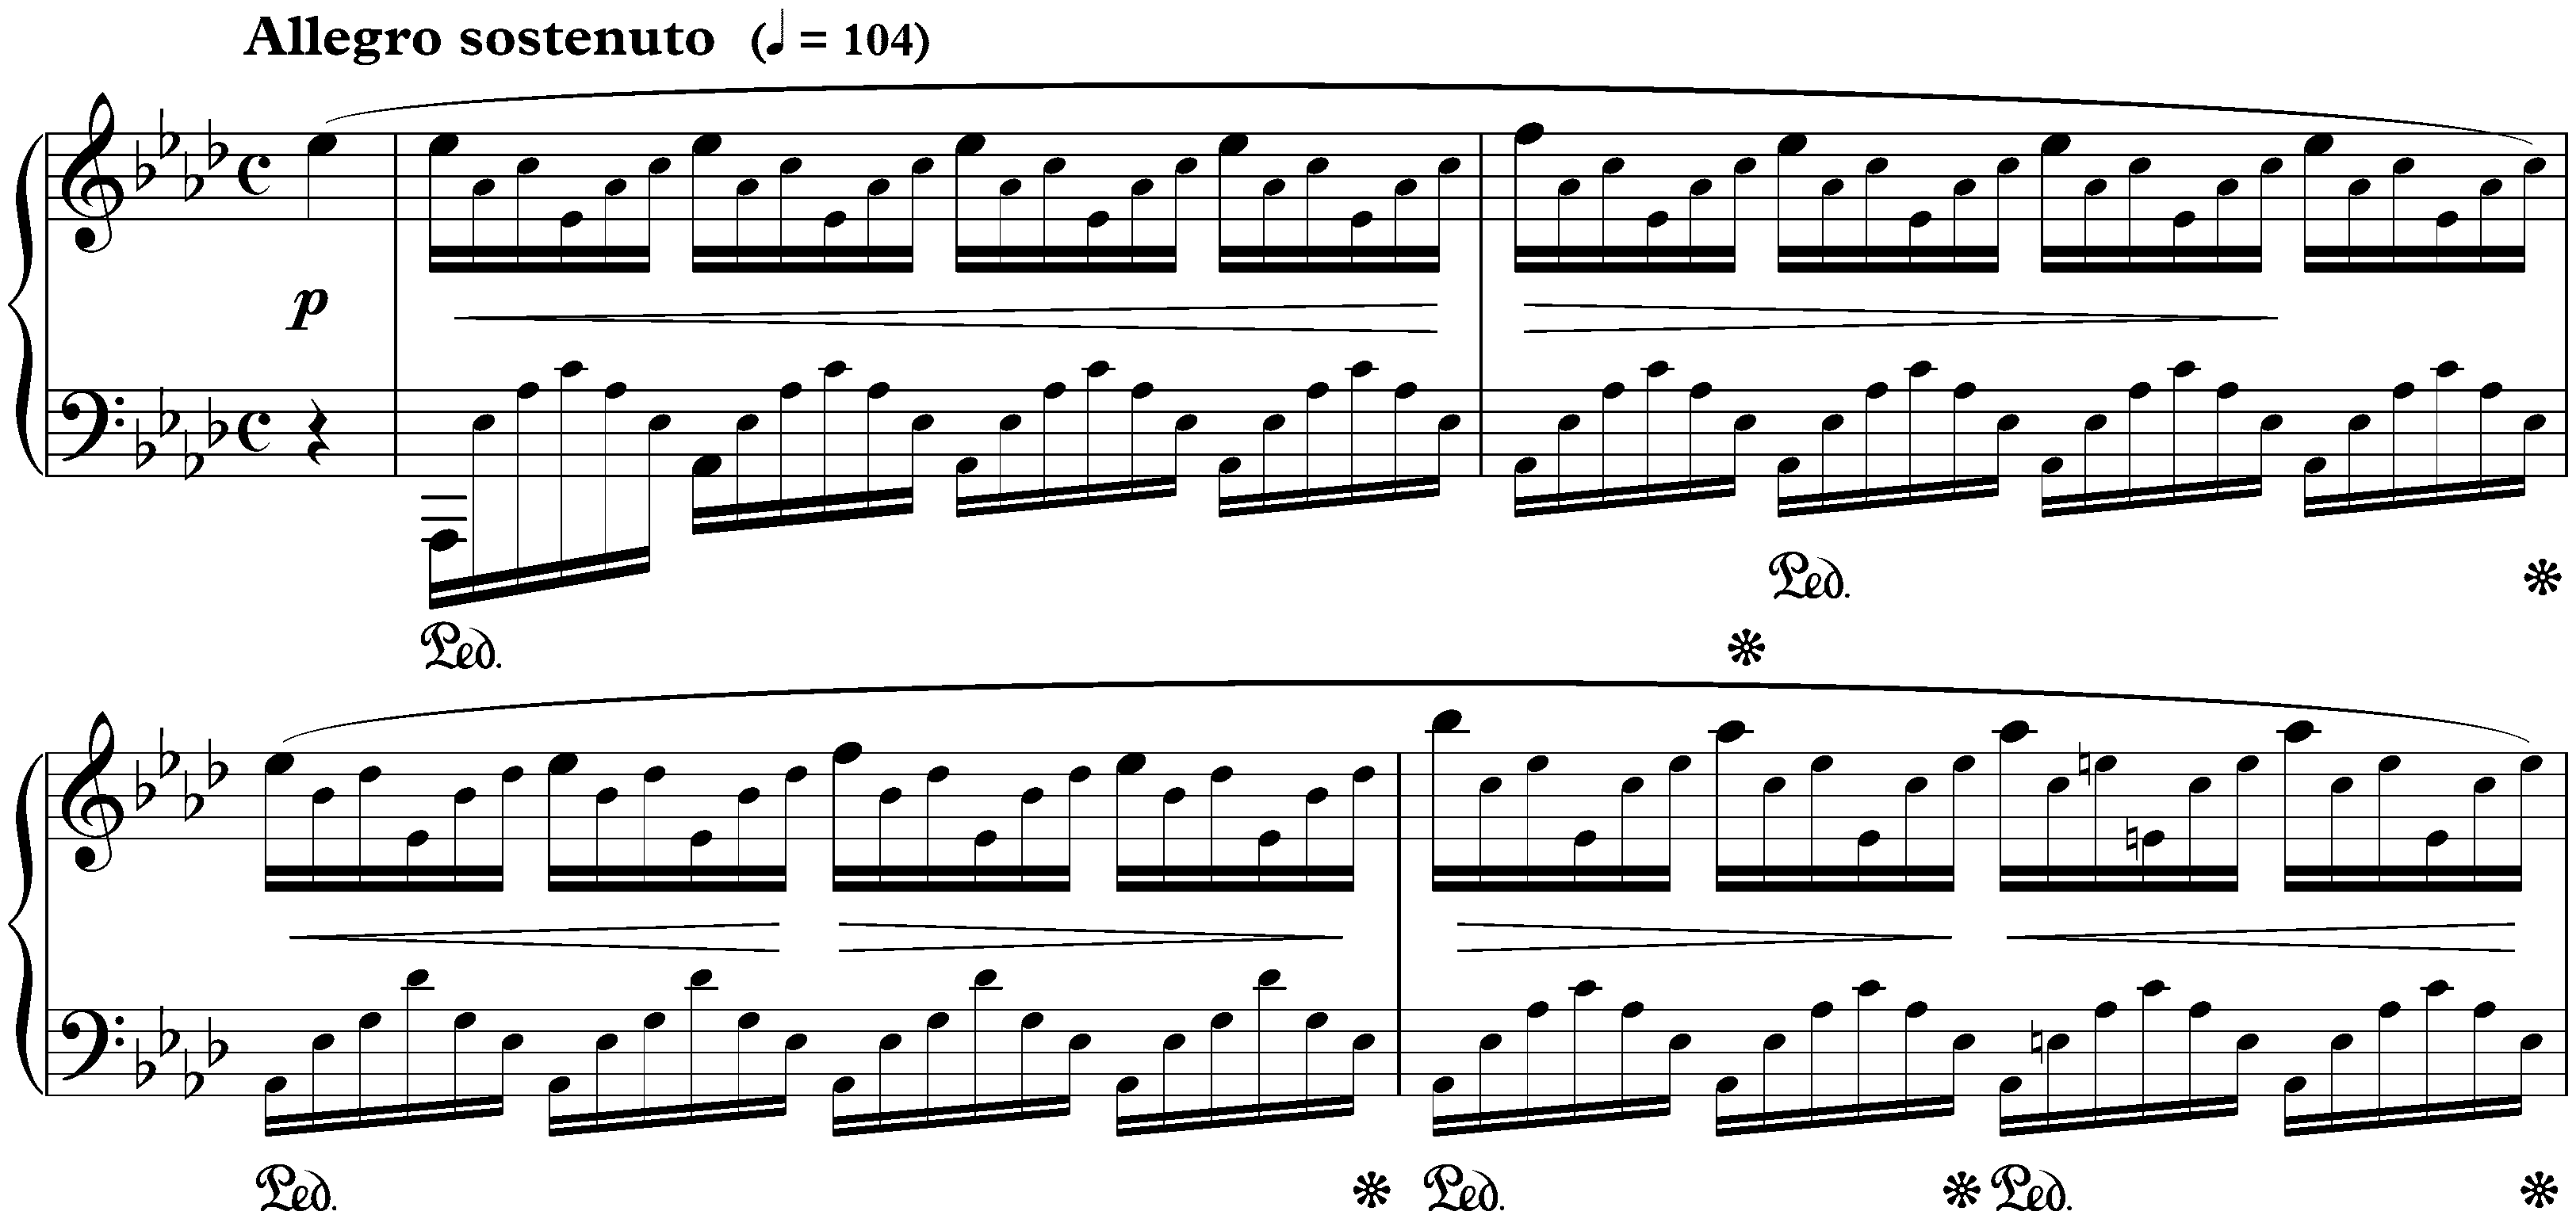 Twelve Études, op. 25; 1. A-flat major